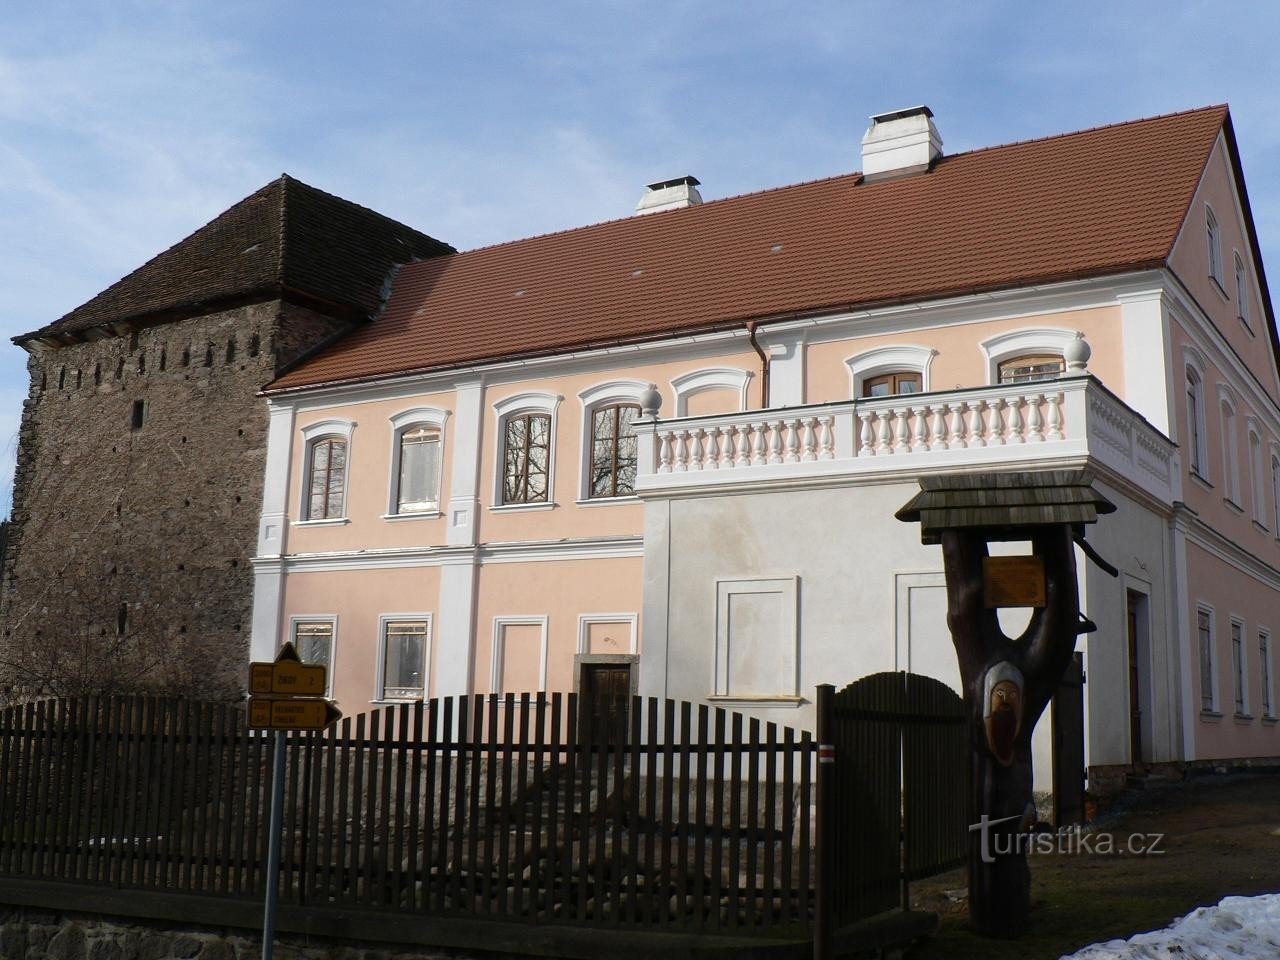 Svojšice, château et forteresse